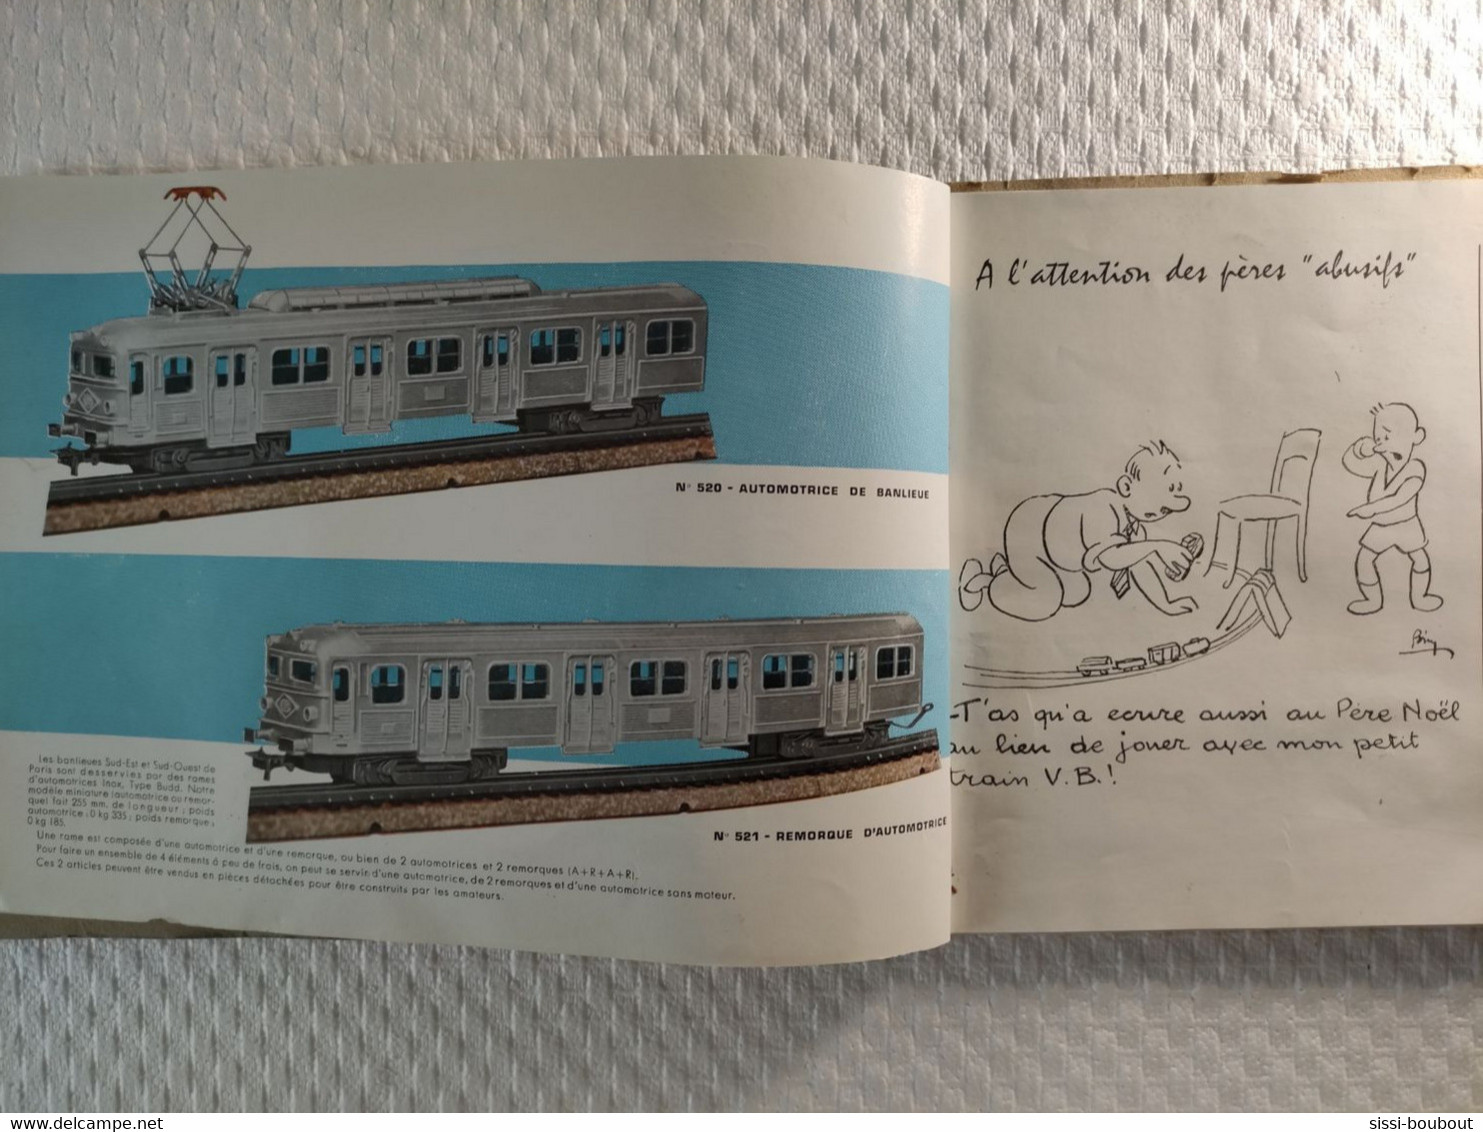 Catalogue De 1960 - "Chemins De Fer Electriques Miniature - VB" -  ECARTEMENT HO - SNCF - Trains, Locomotives Etc... - Sonstige & Ohne Zuordnung